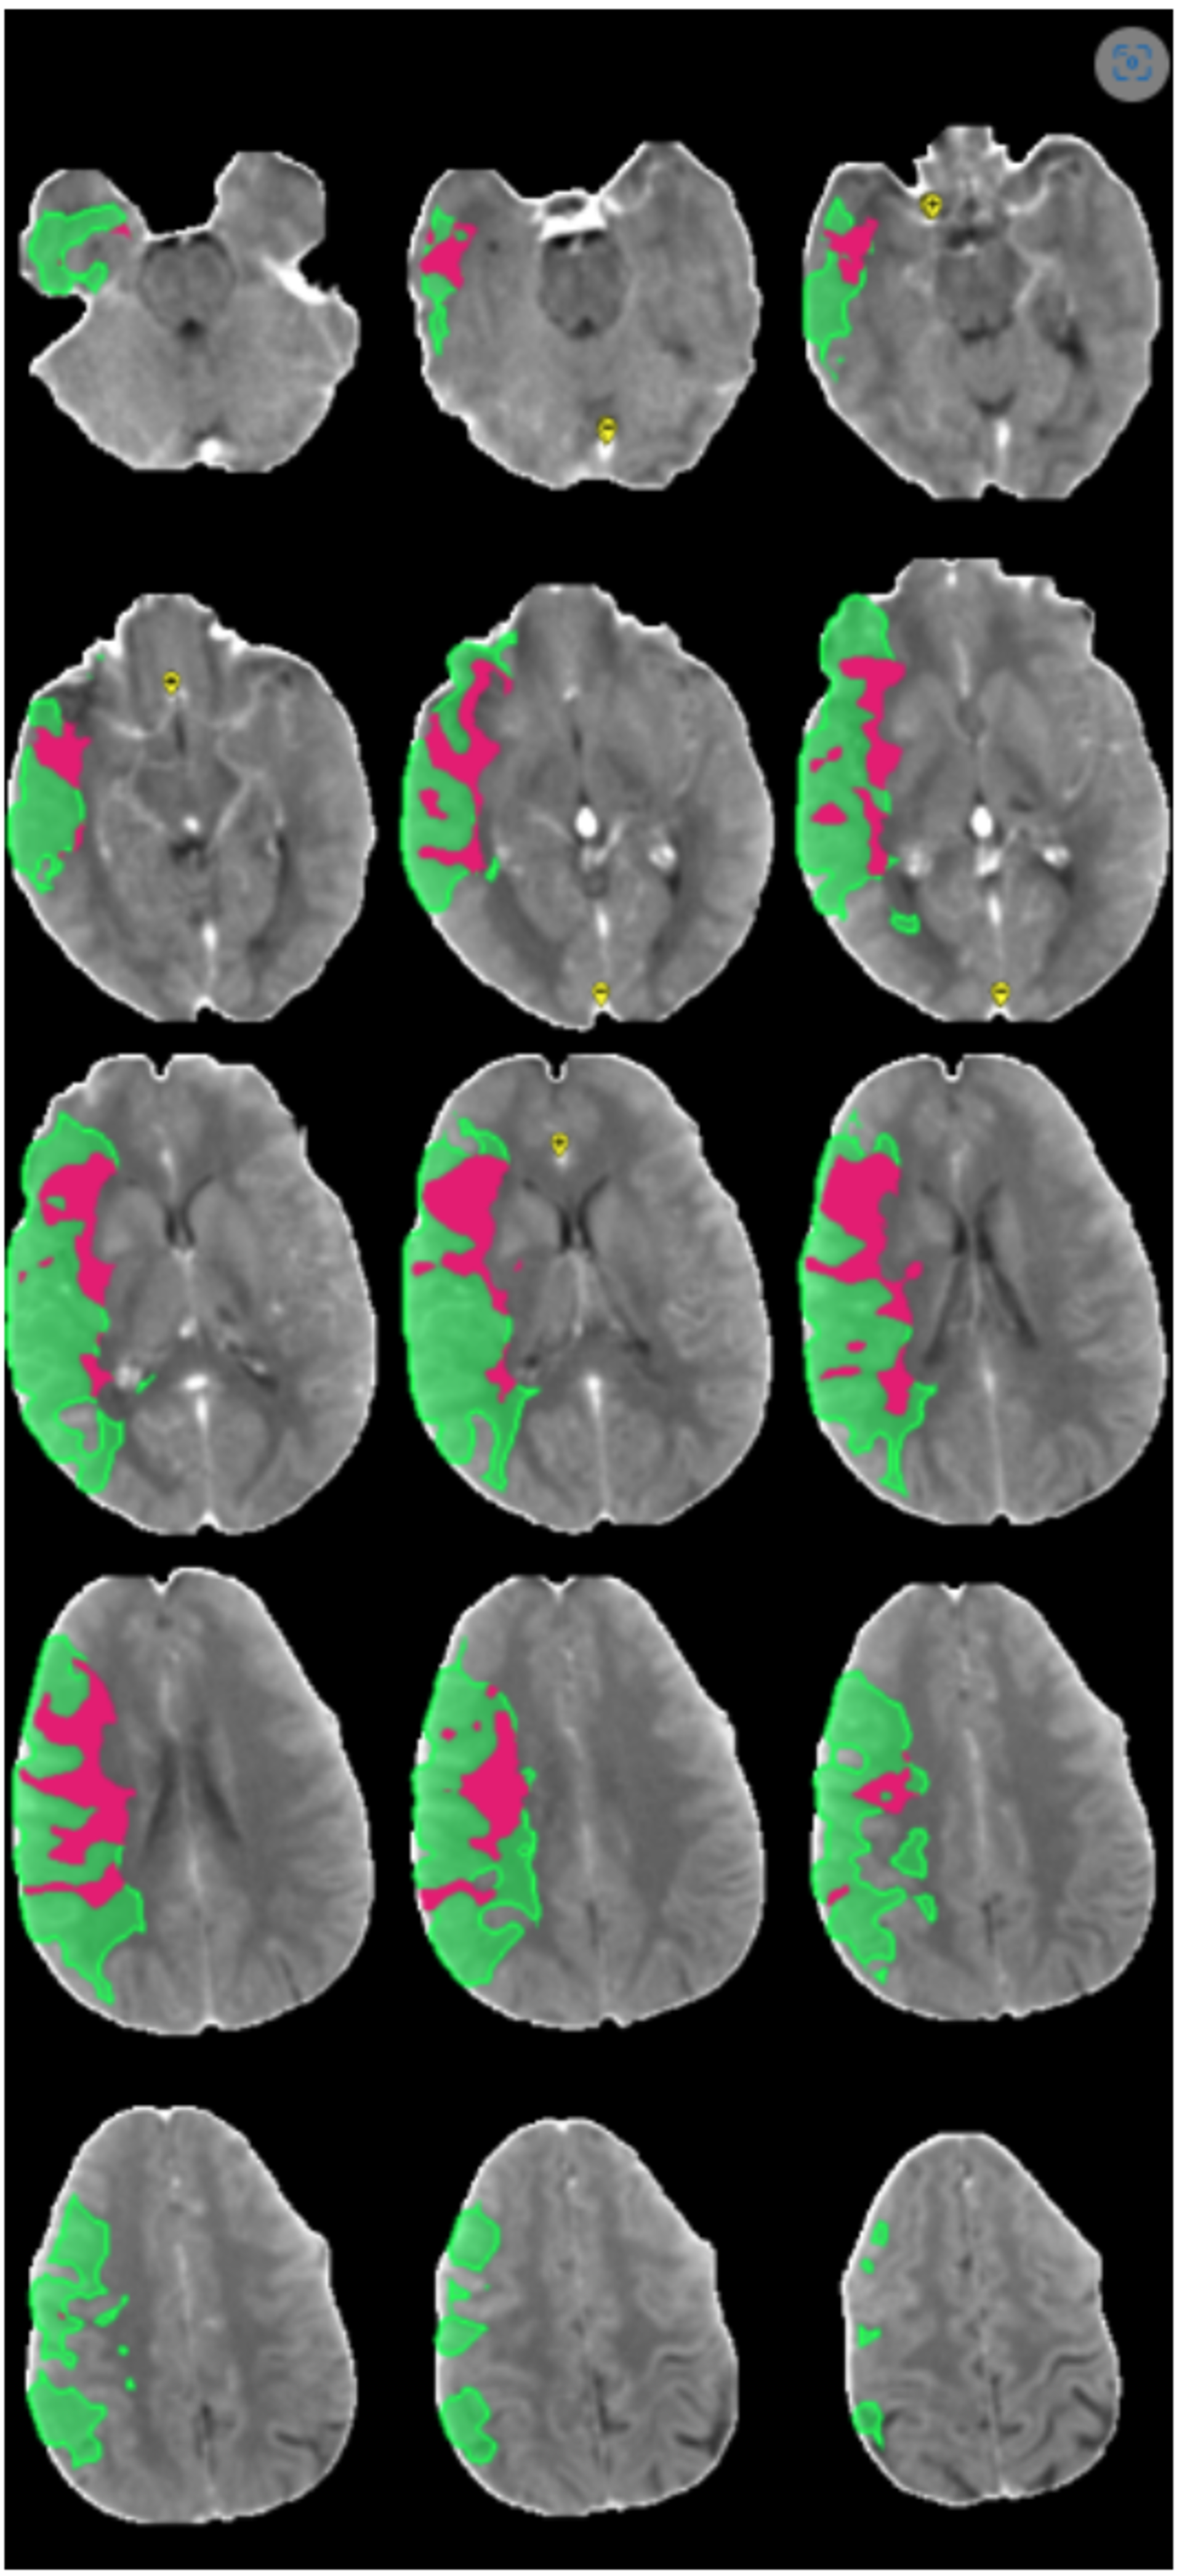 ilustrační snímek CT perfúzního vyšetření (červeně zobrazeno tzv. jádro ischémie a zeleně tkáň, kterou můžeme efektivní léčbou zachránit, tzv. penumbra) – vše hodnoceno automaticky softwarem Brainomix.